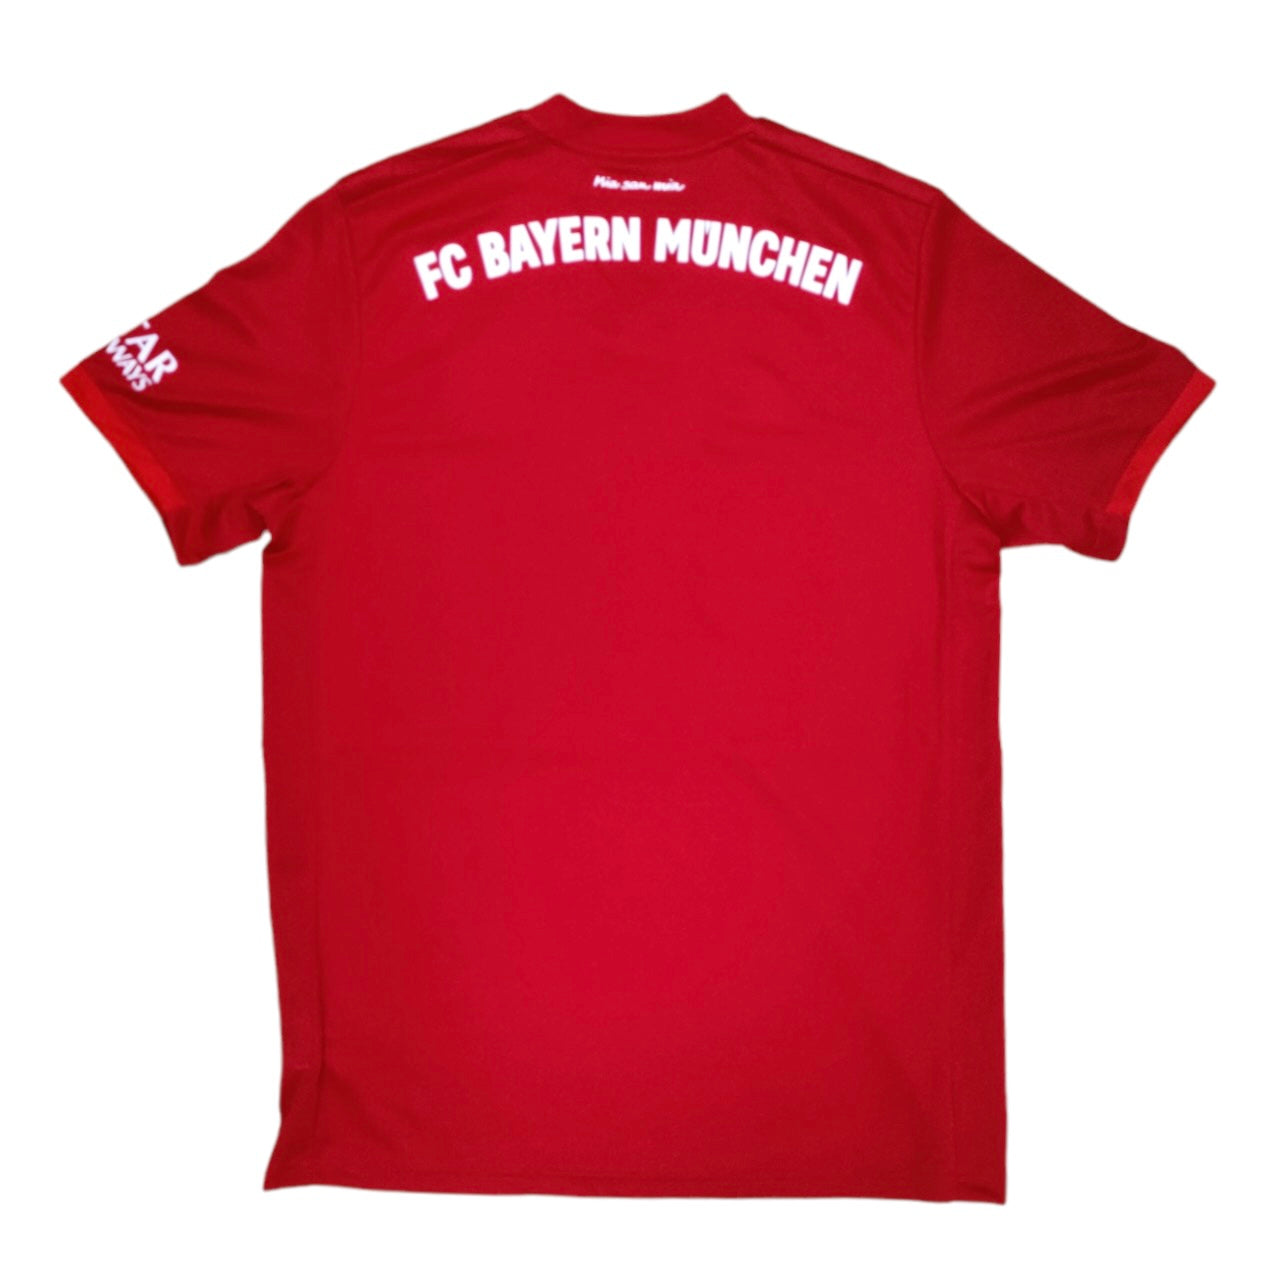 Adidas Bayern Munich 2019/2020 Home Football Jersey